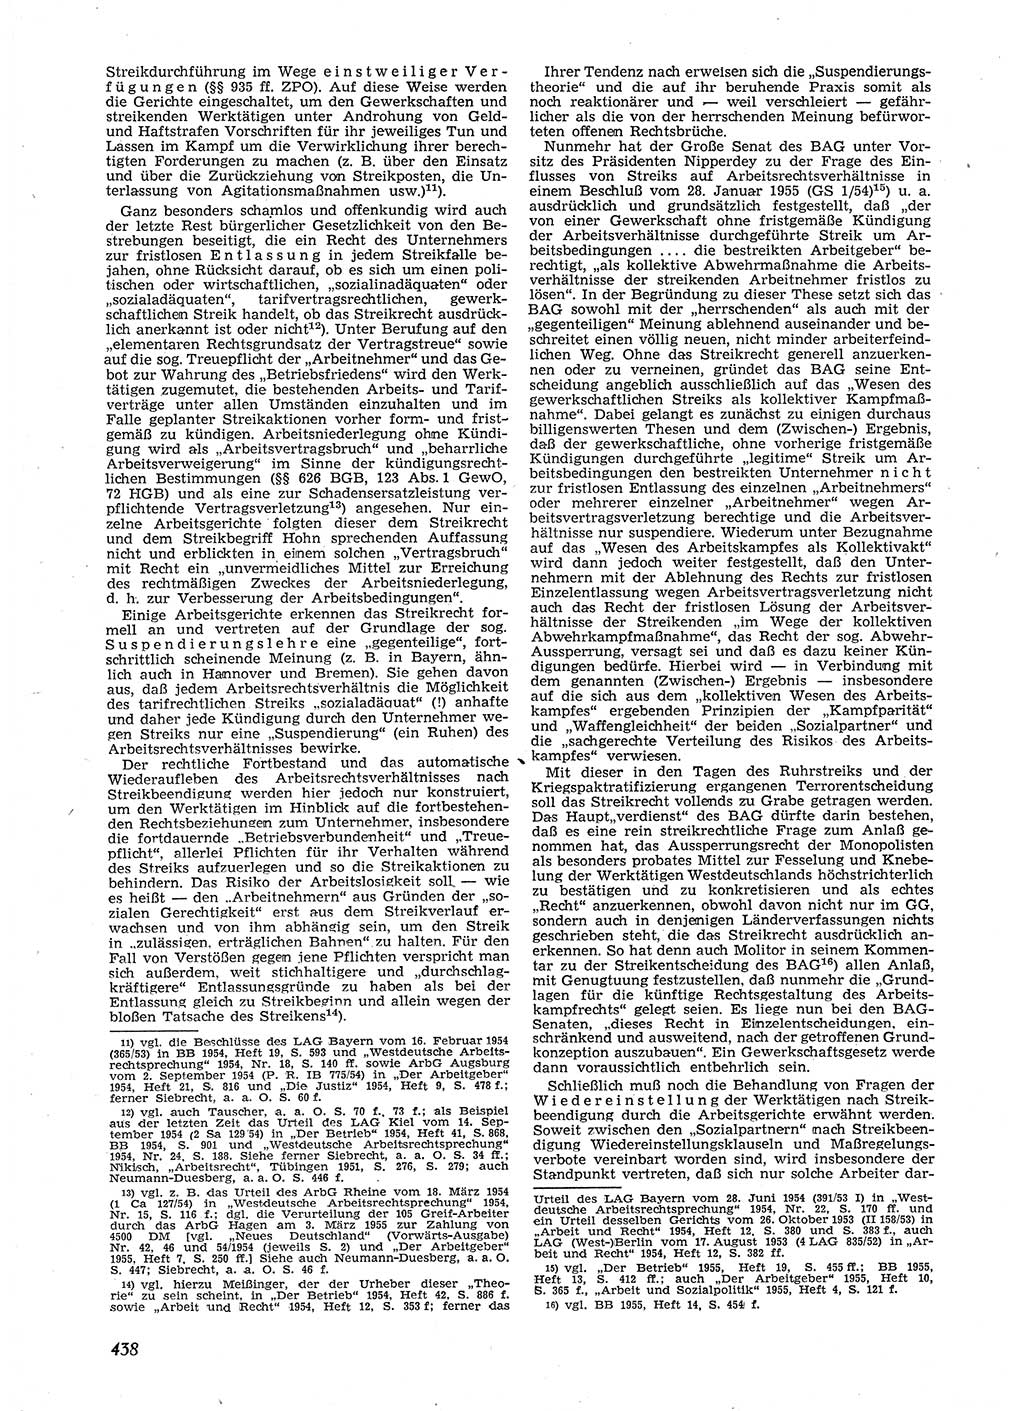 Neue Justiz (NJ), Zeitschrift für Recht und Rechtswissenschaft [Deutsche Demokratische Republik (DDR)], 9. Jahrgang 1955, Seite 438 (NJ DDR 1955, S. 438)